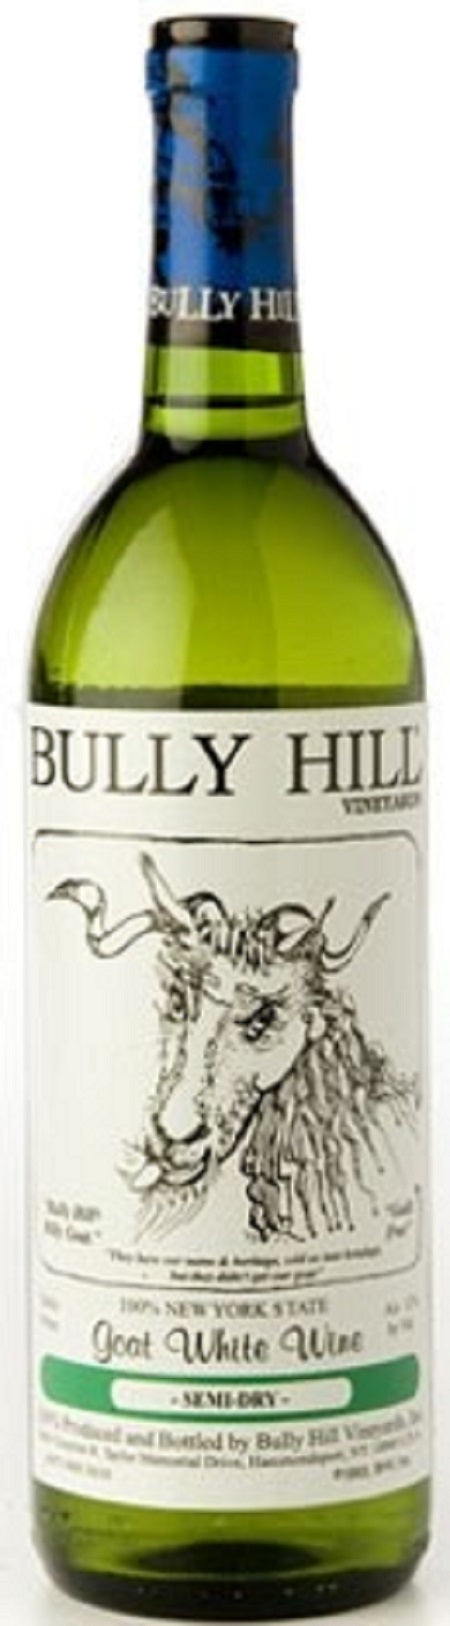 Bully Hill Vineyards Goat White 2012